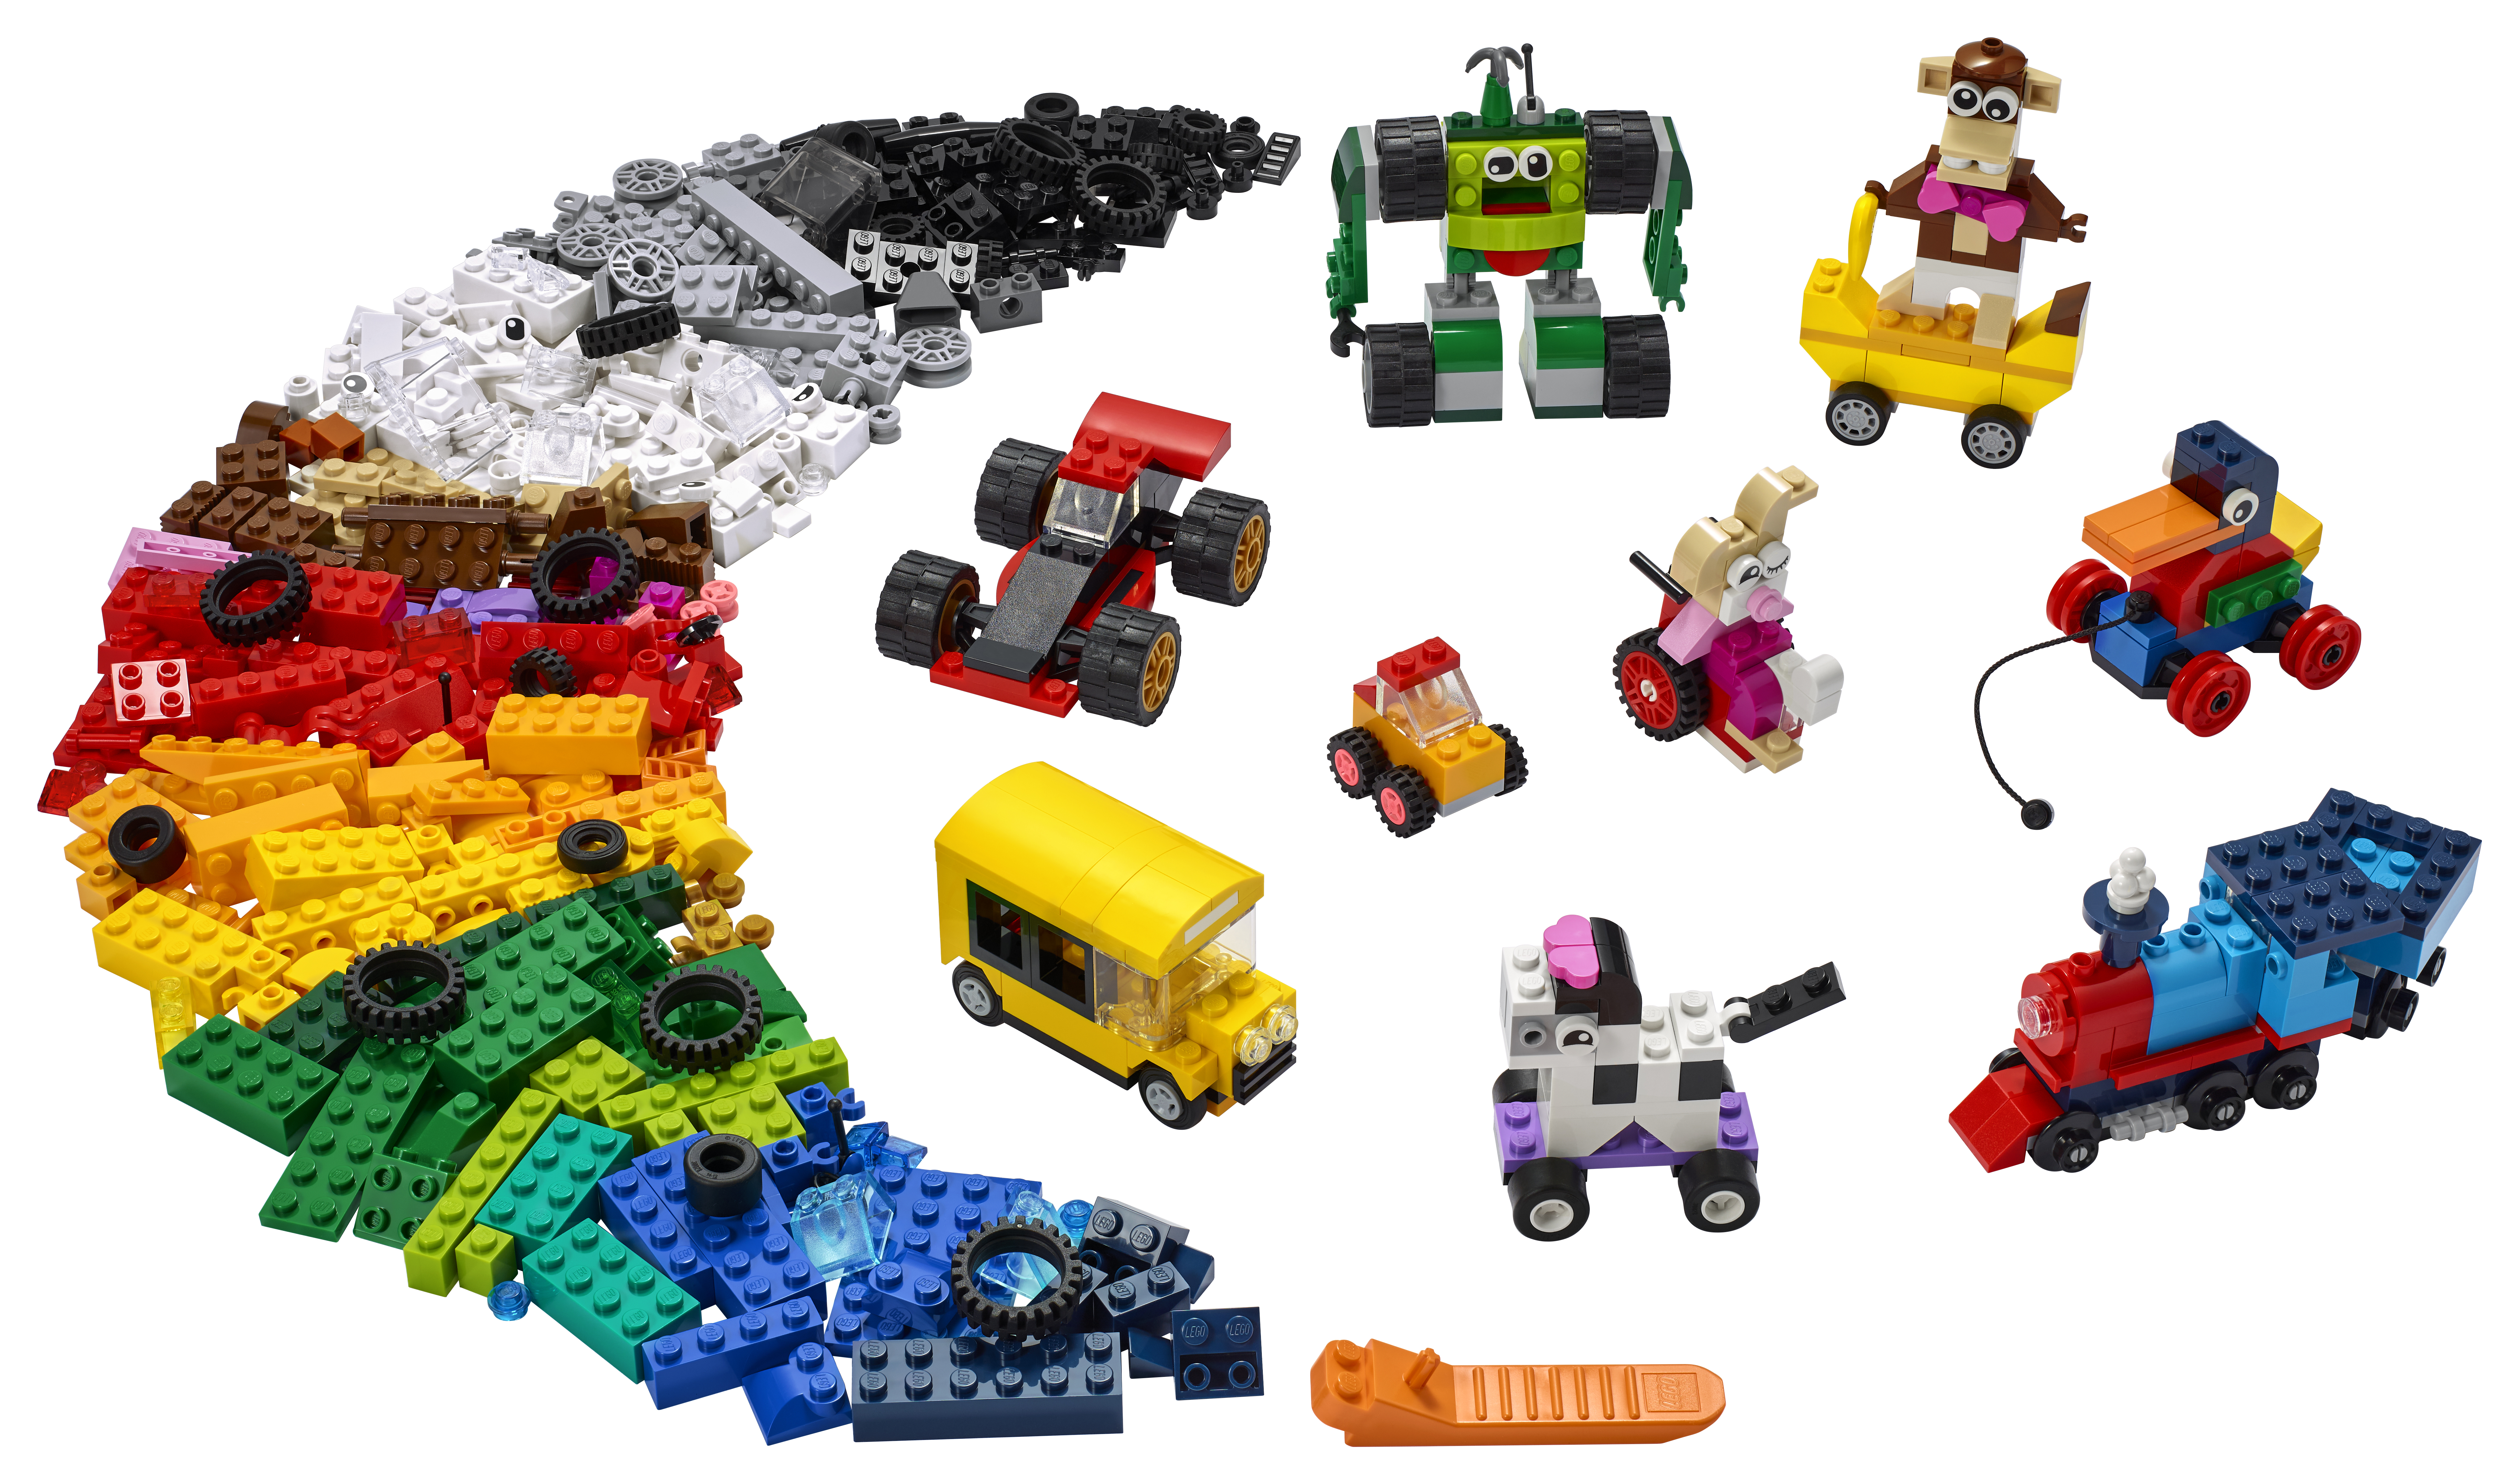 Produkt miniatyrebild LEGO® Classic 11014 Klosser og hjul